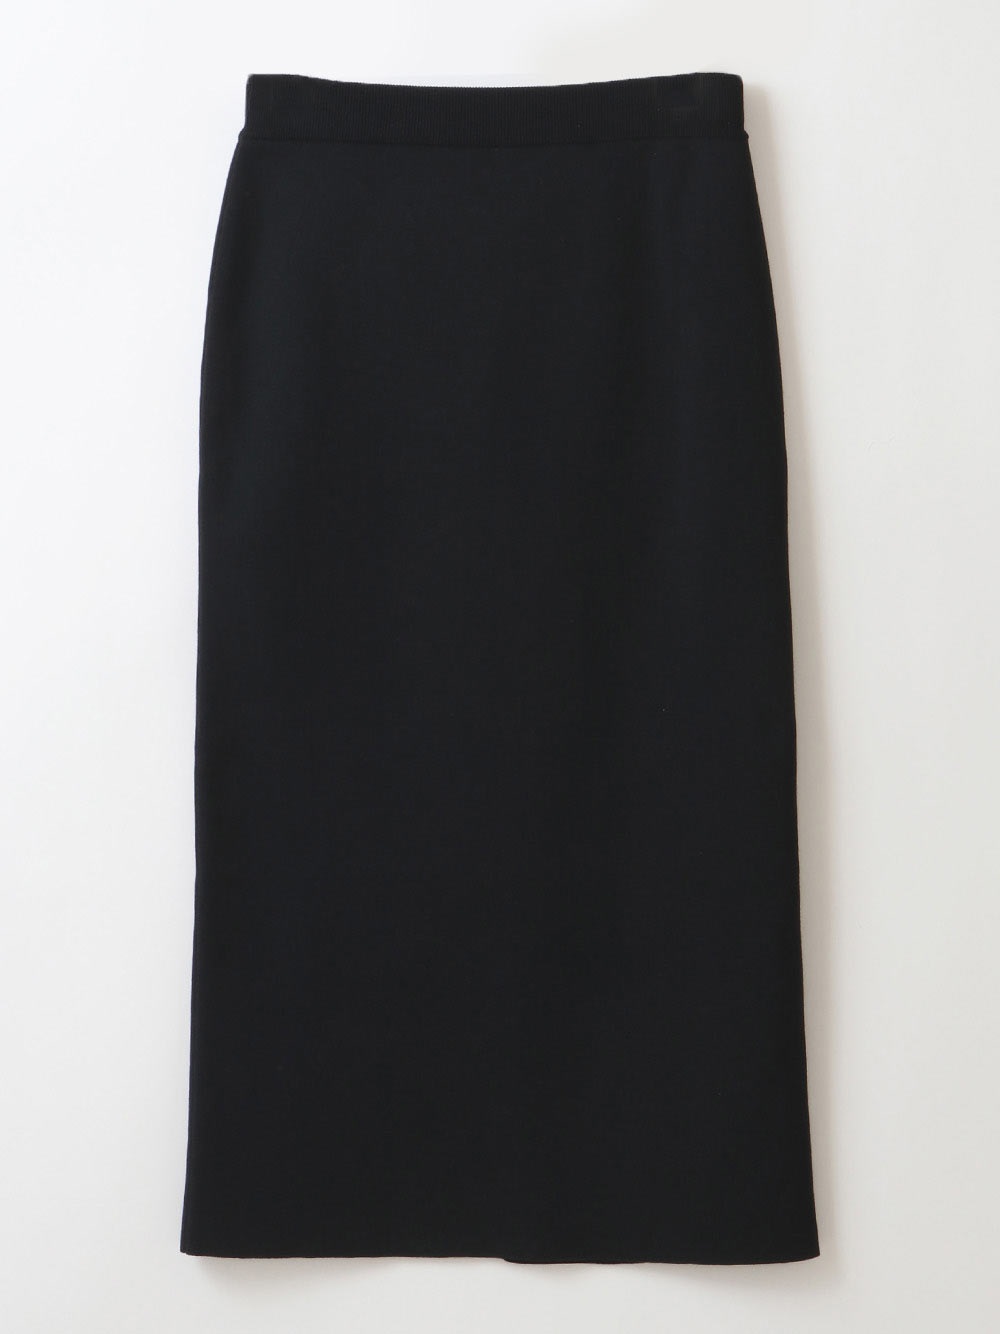 Skirt(00ブラック-フリー)